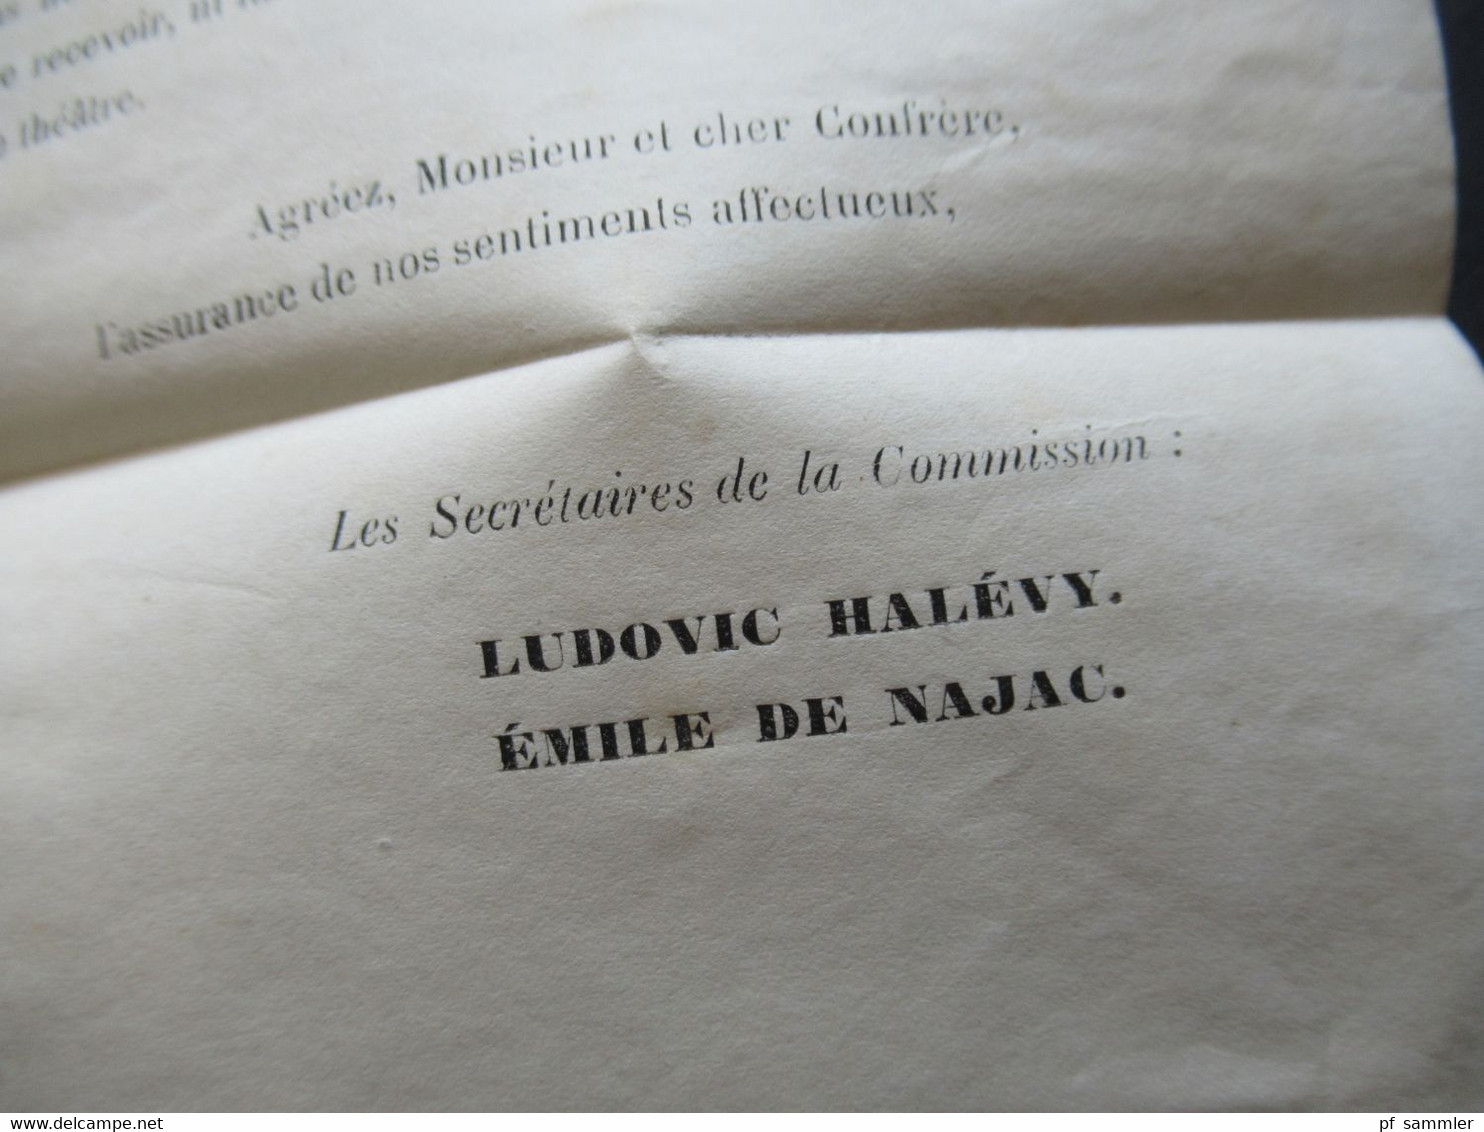 Paris 8.7.1872 Ceres Nr.48 (2) Commission des Auteurs & Compositeurs Dramatiques Ludovic Halevy und Emile De Najac